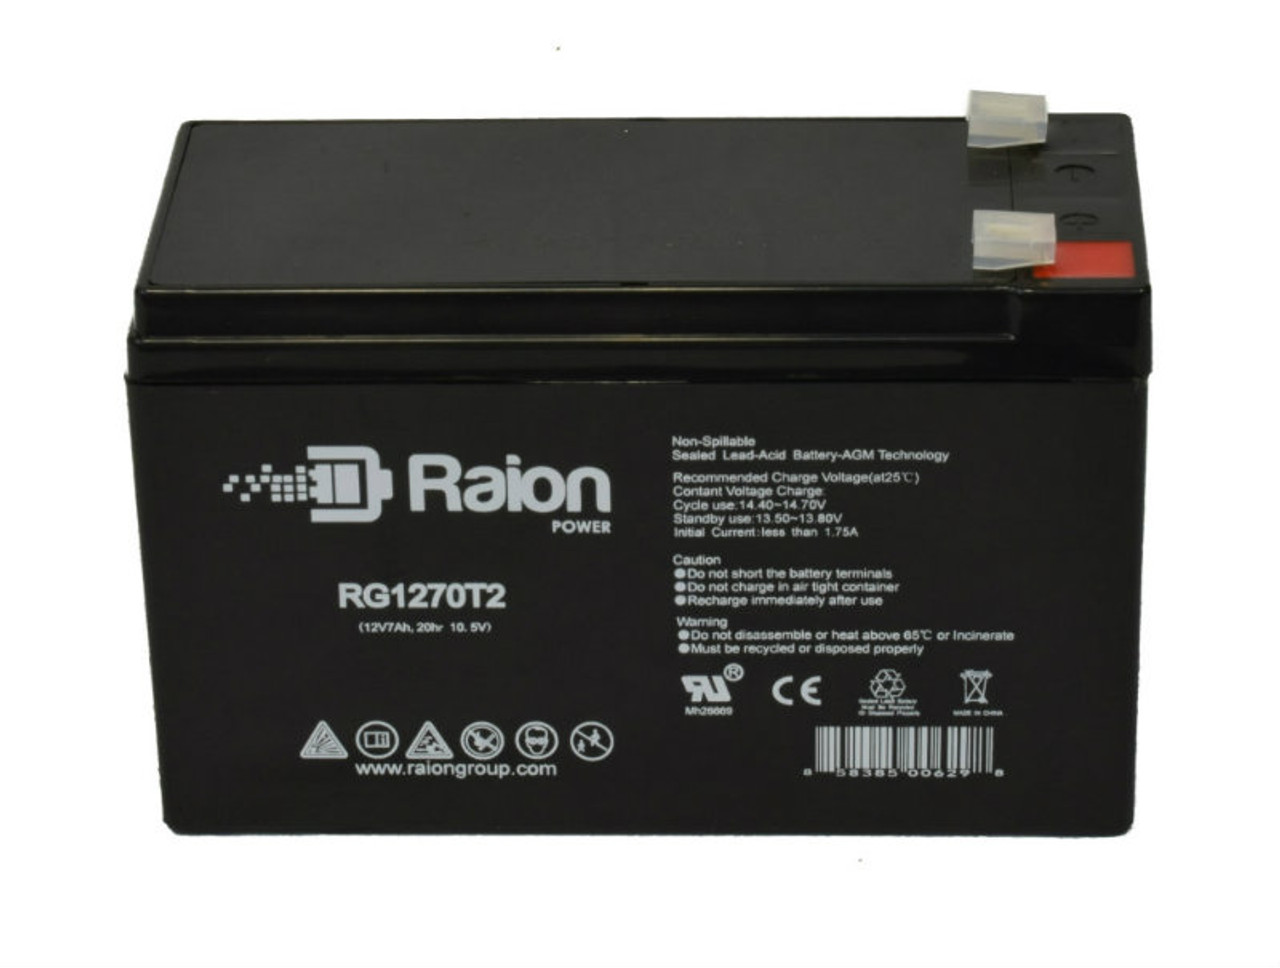 Raion Power RG1270T1 12V 7Ah Lead Acid Battery for ADT Security Alarm 899953